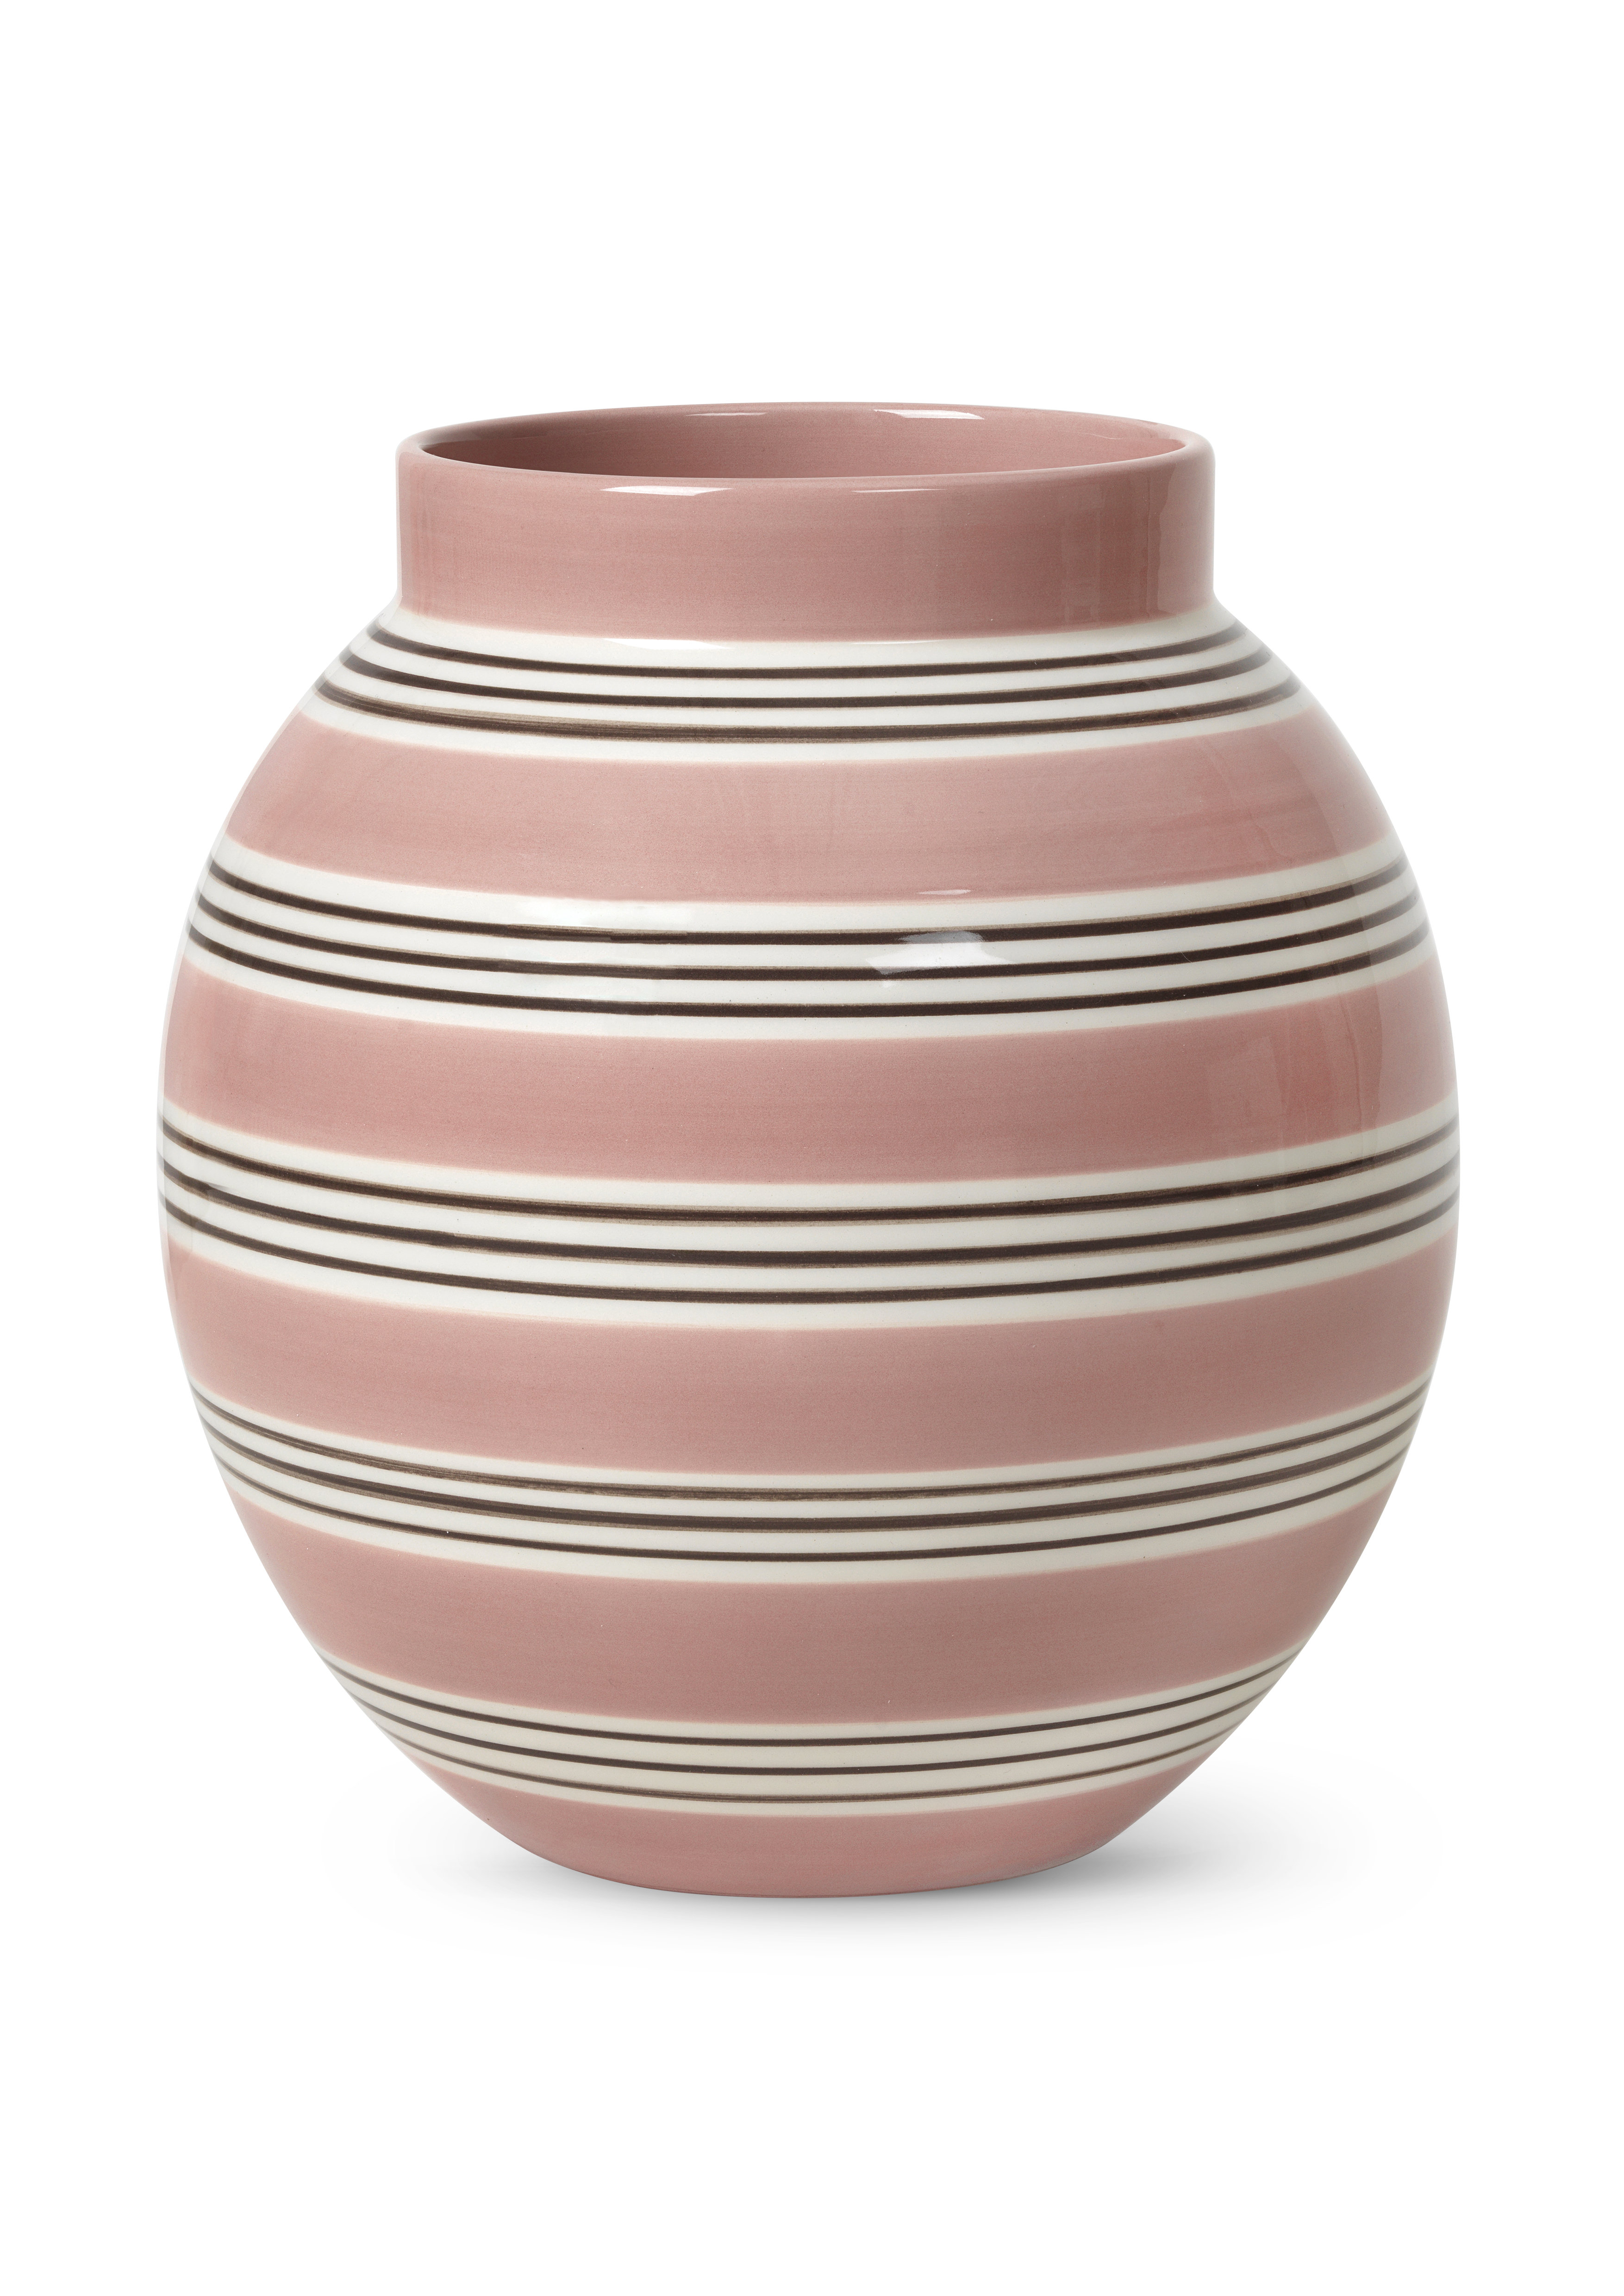 Kahler Nuovo Handmade Table Vase by Stilleben V/Reckweg Nordentoft | Perigold